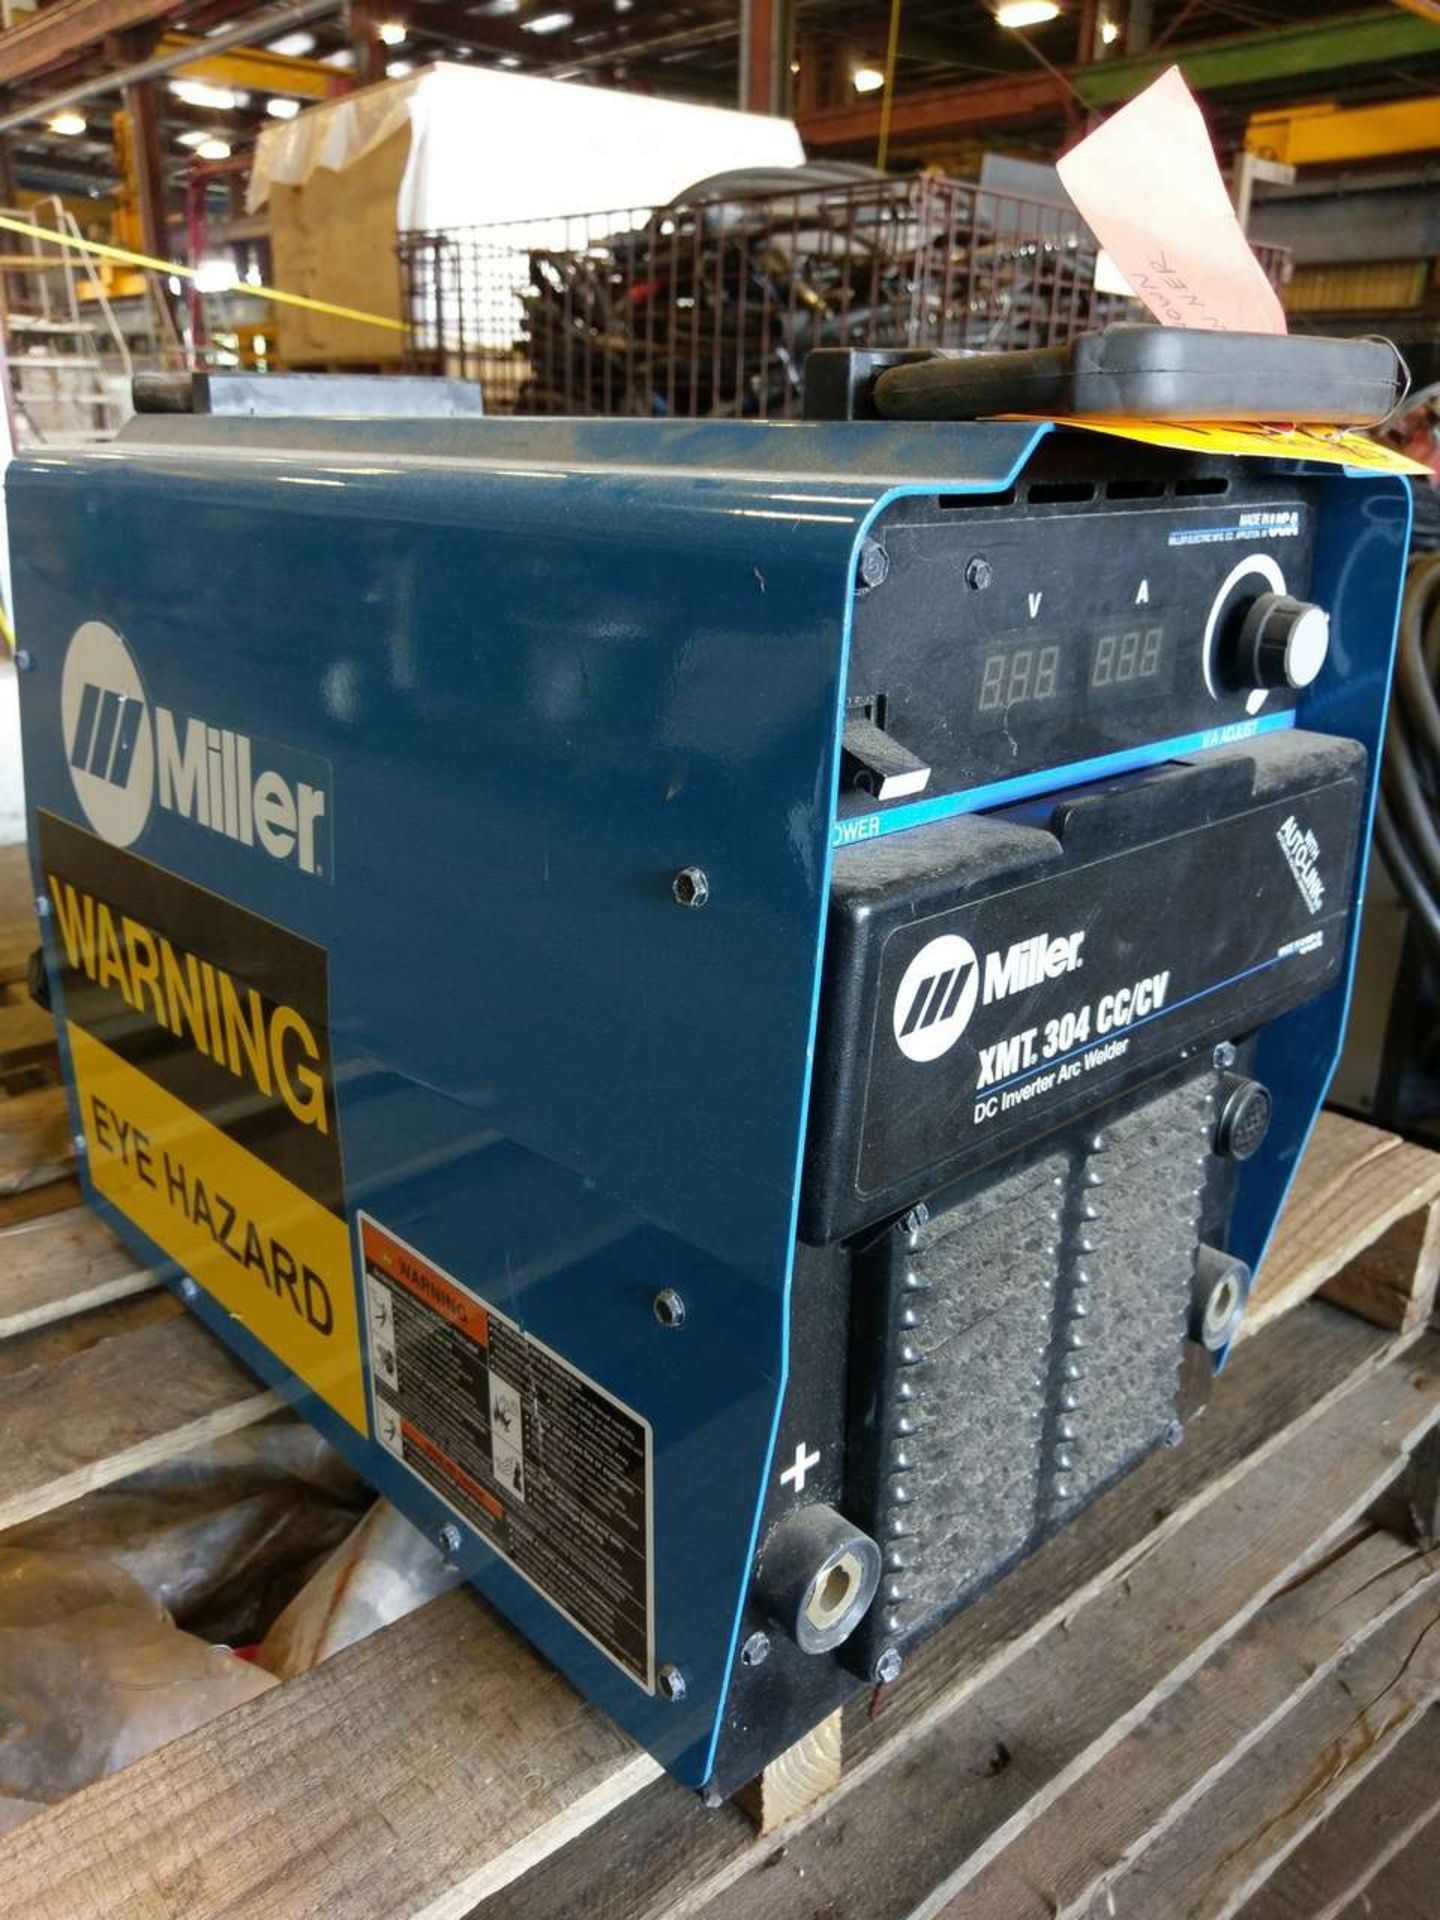 Miller XMT 304 CC/CV Multi Process Welder